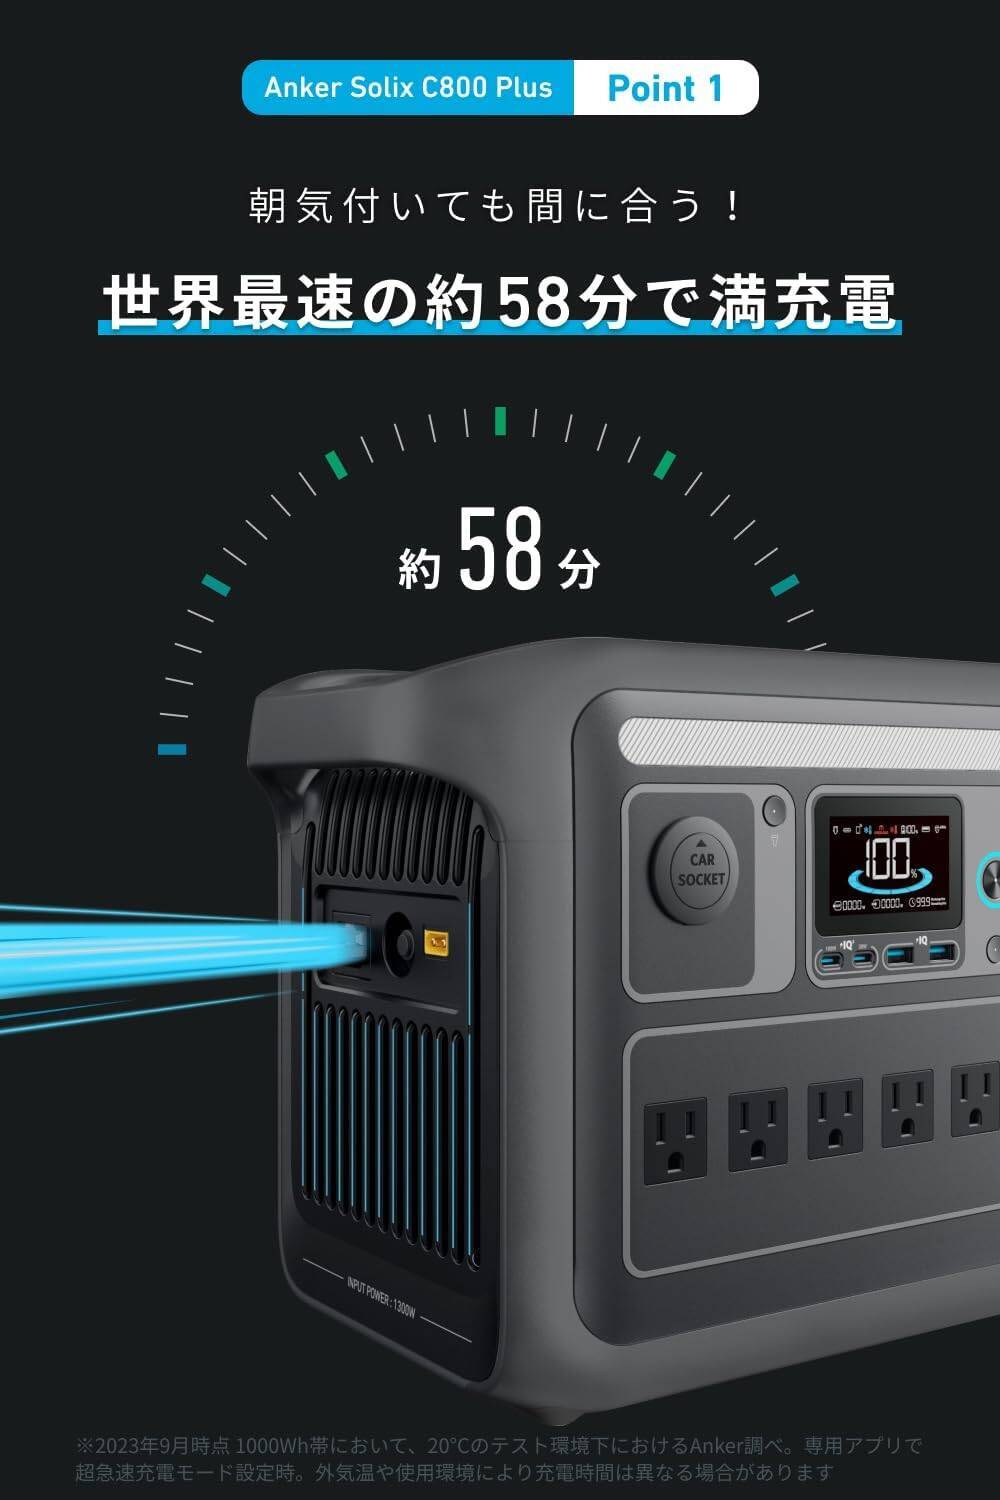 【新製品】携帯ライト付属〜防災対応ポータブル電源「Anker Solix C800 Plus Portable Power Station」が発売